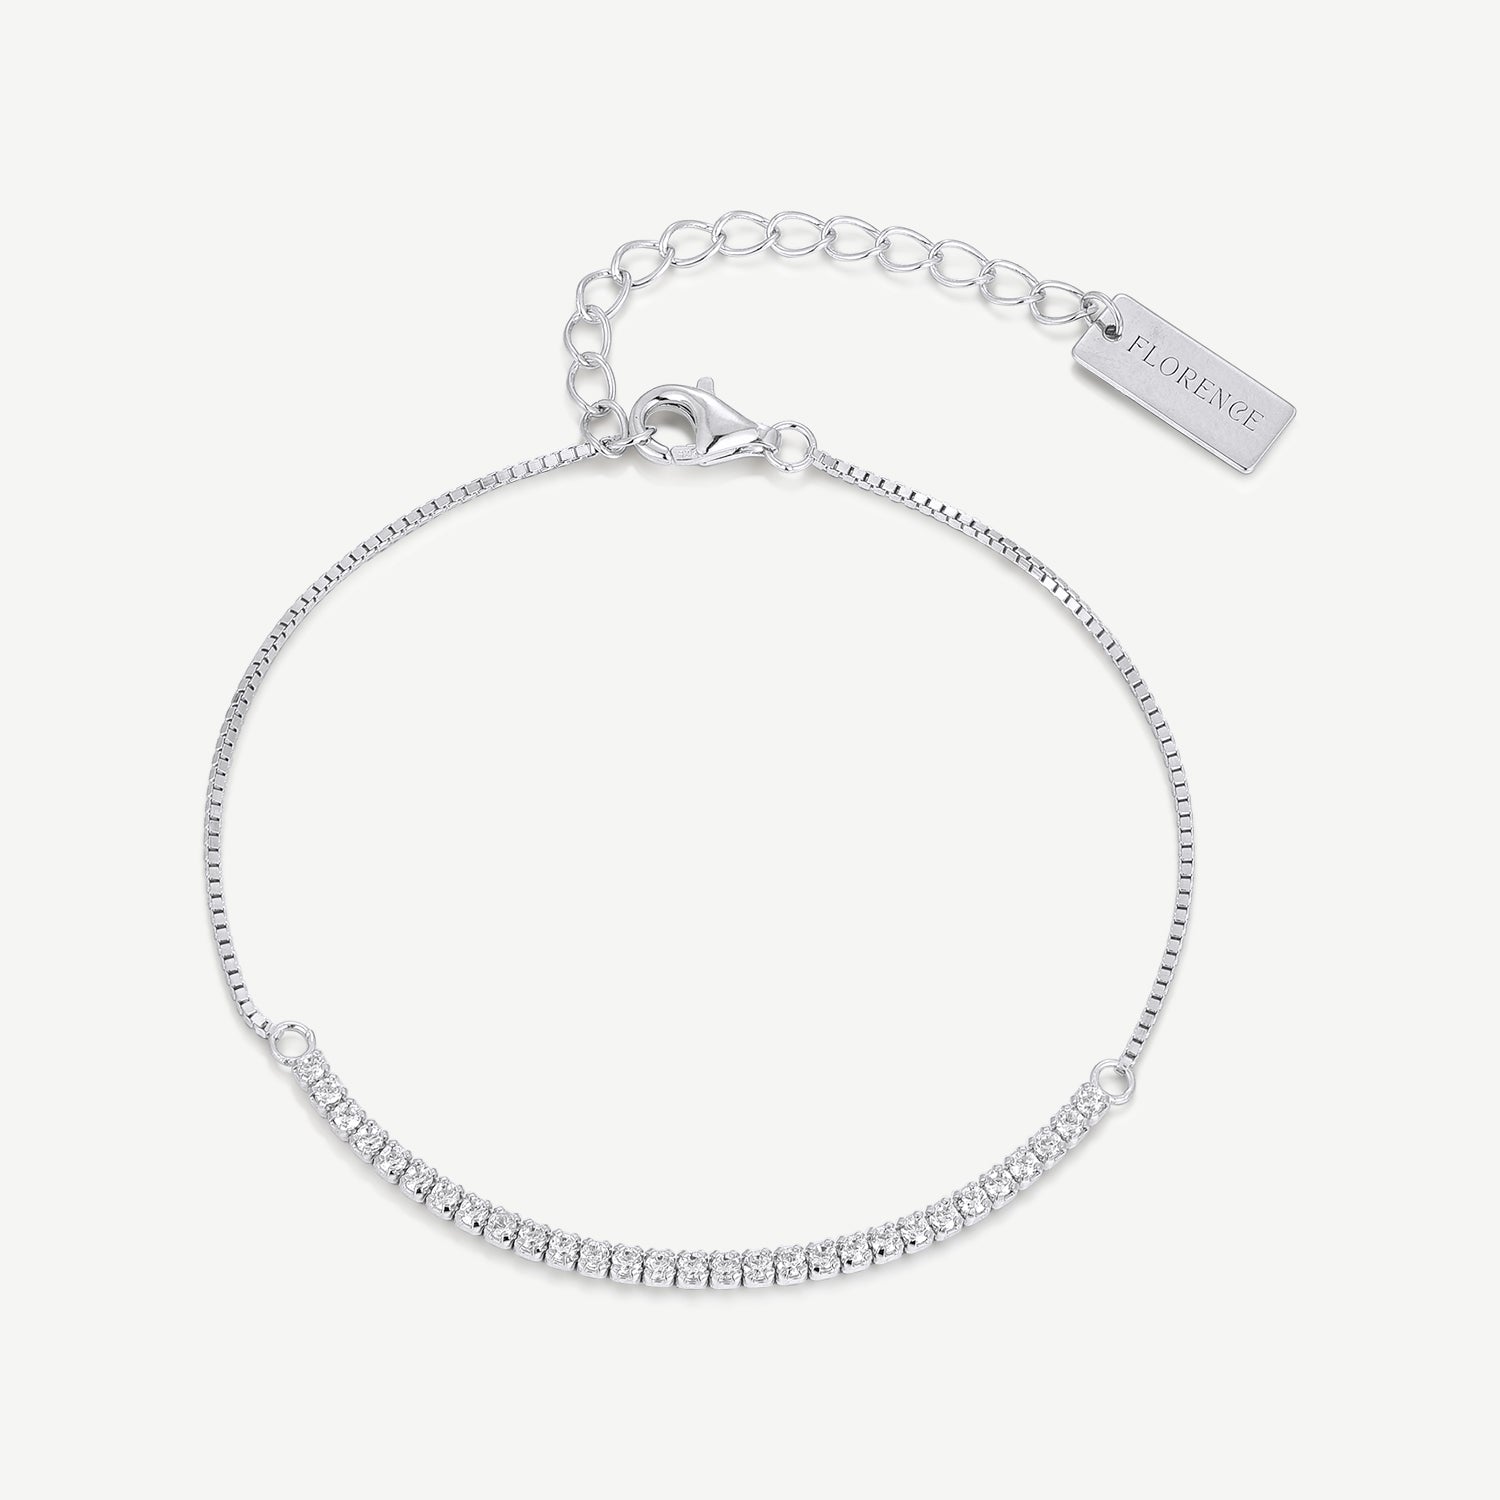 Lush Meadows Silver Bracelet